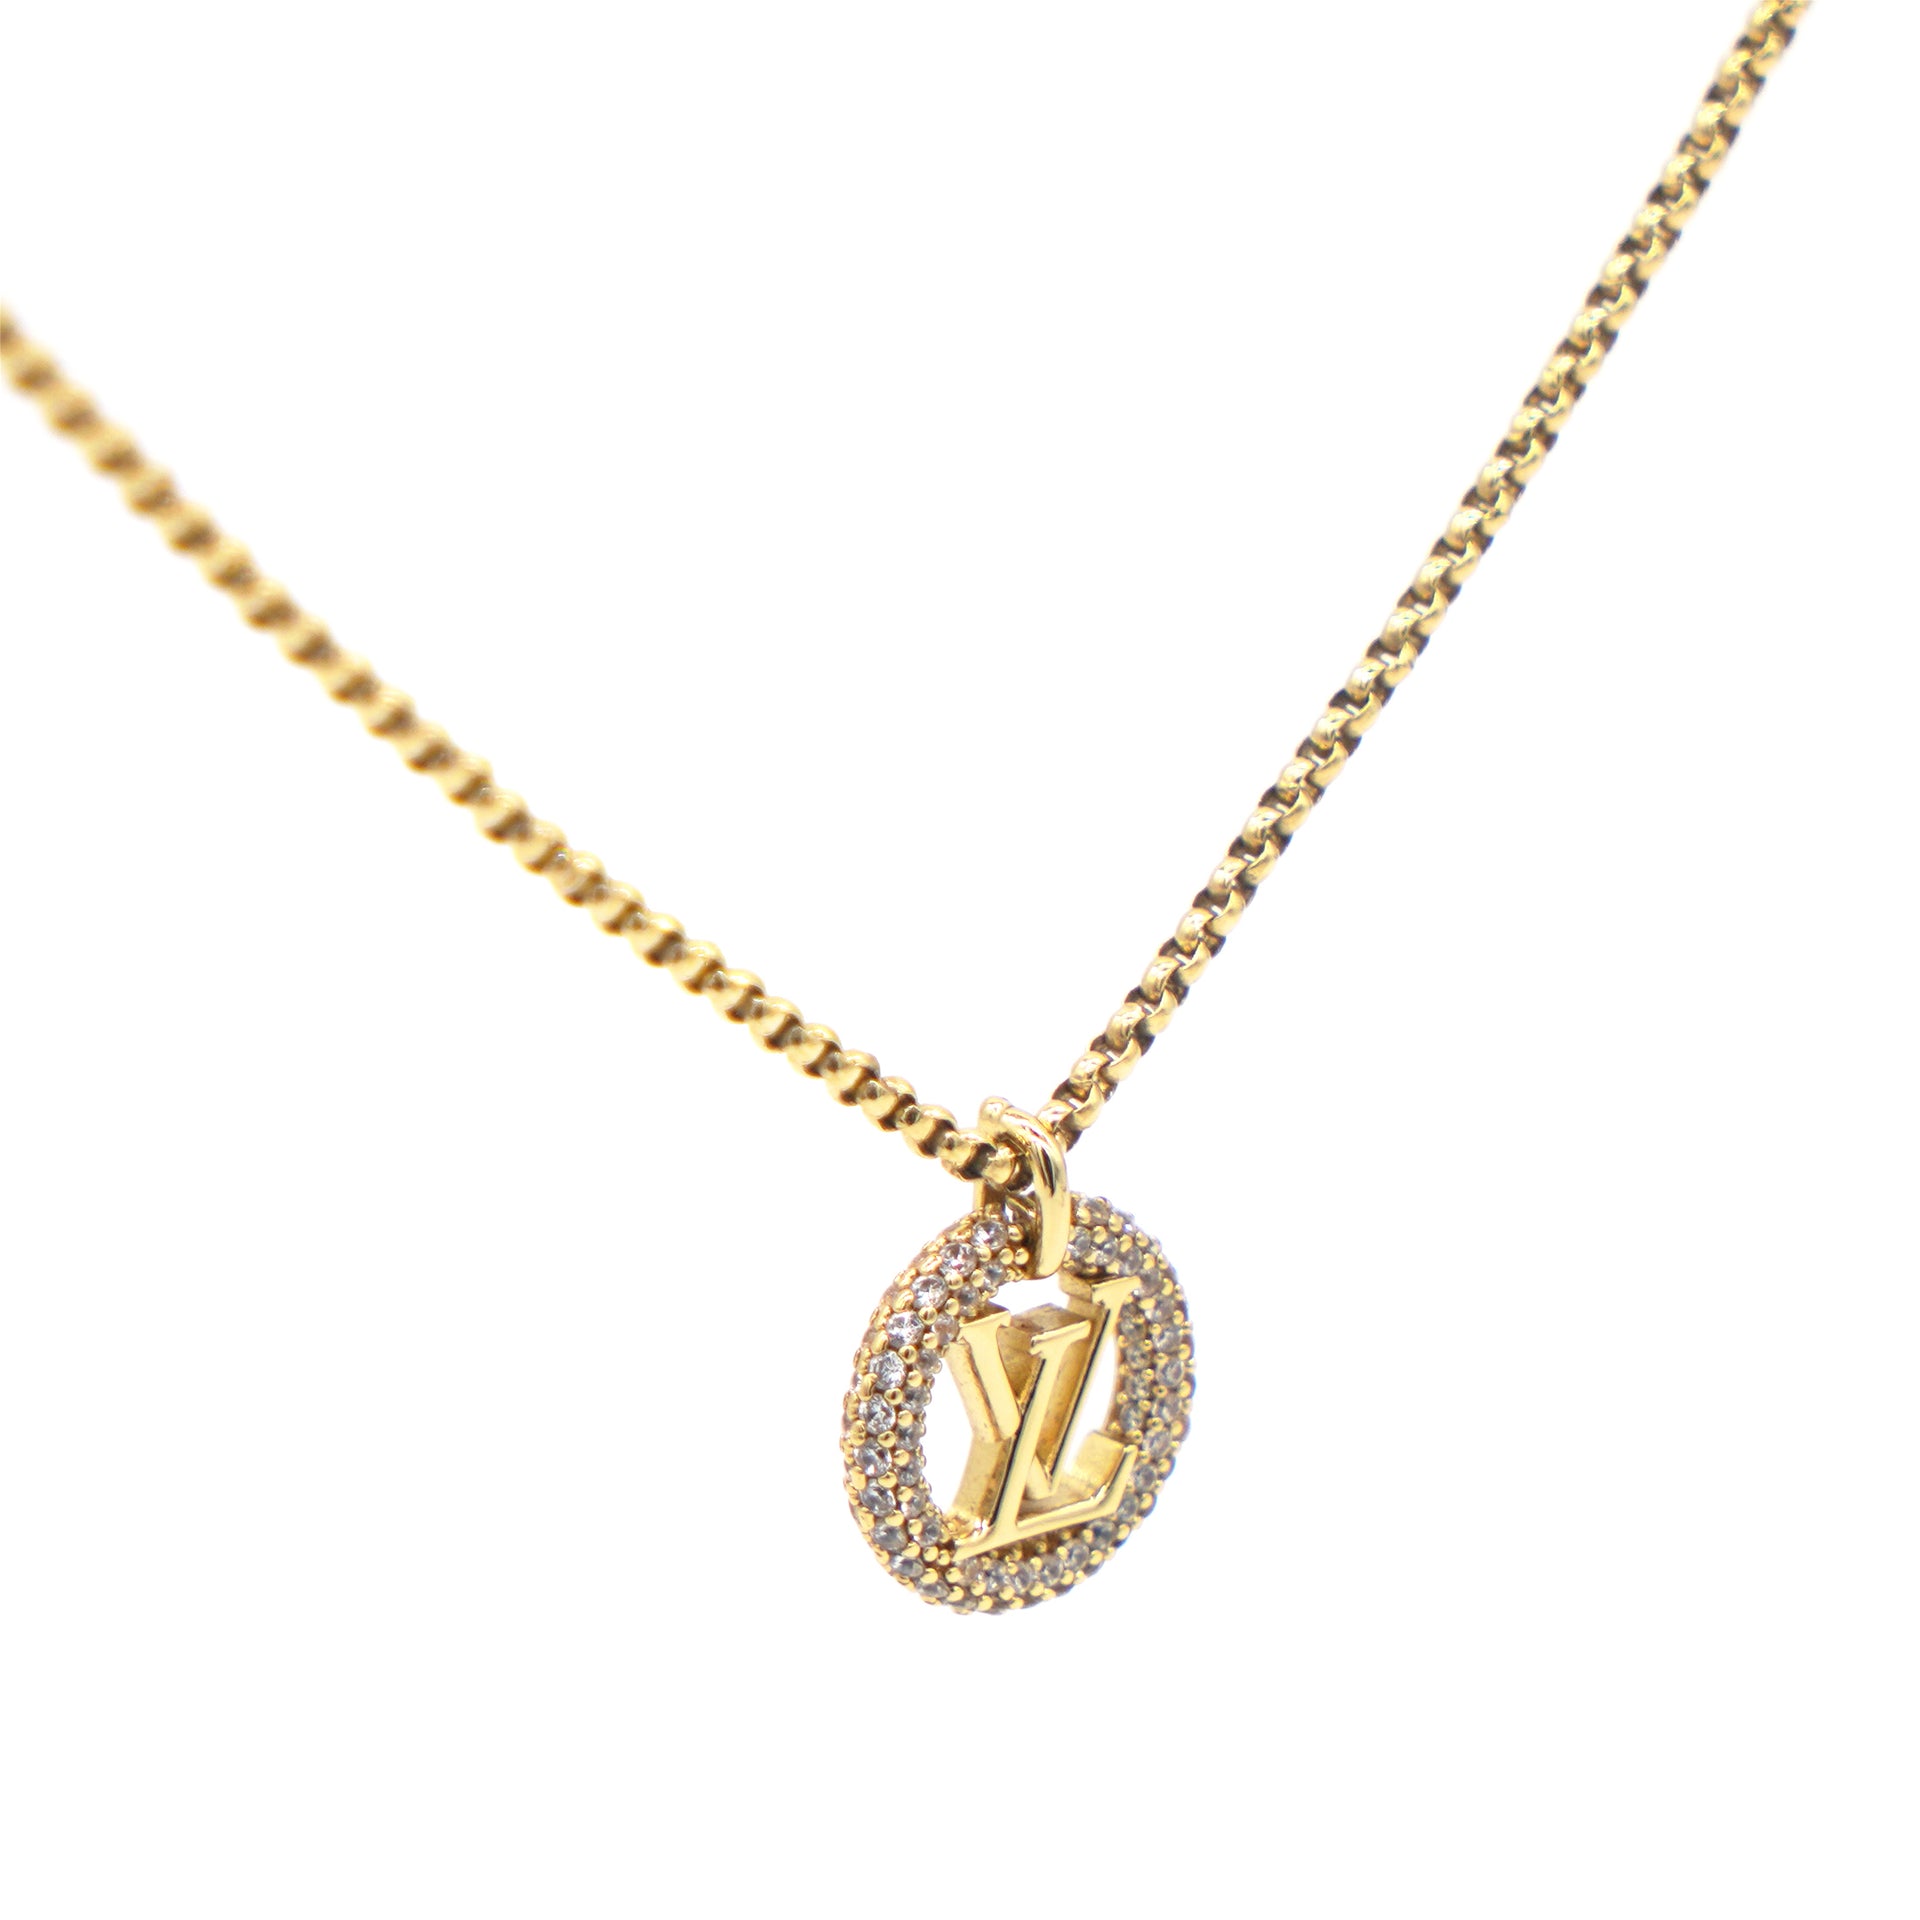 Shop Louis Vuitton Necklaces & Pendants (M00759) by mariposaz